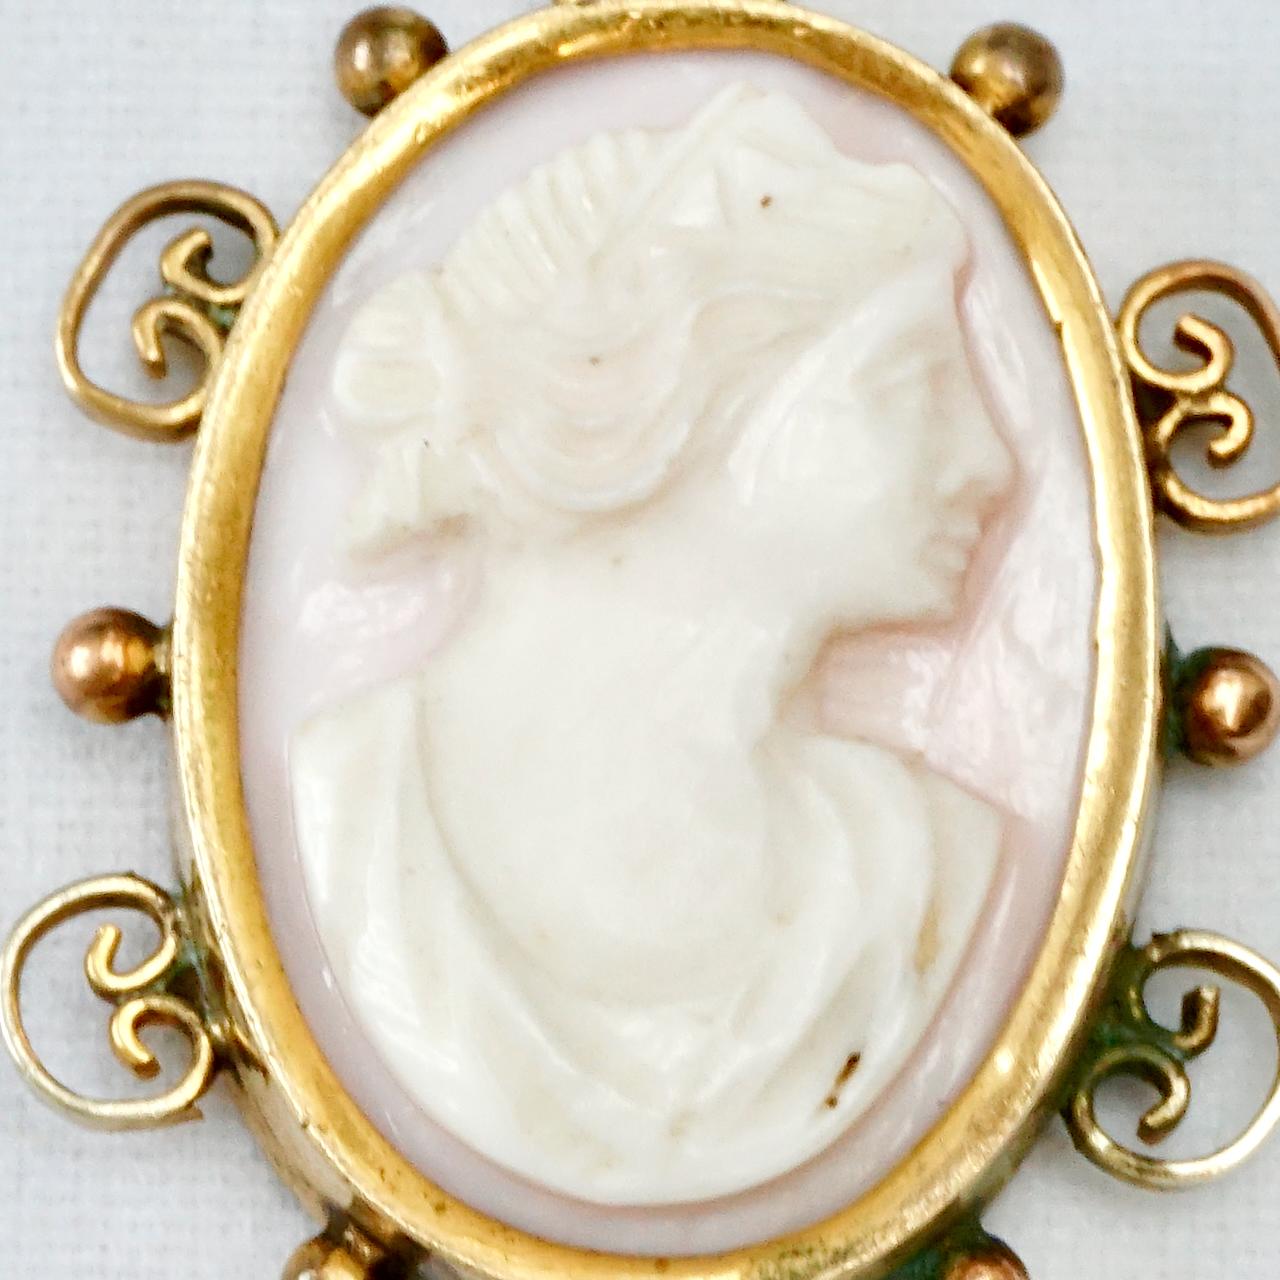 Magnifique pendentif antique en corail sculpté en peau d'ange représentant une femme, dans une monture décorative en plaqué or. Mesure 3,3 cm / 1,3 pouces par 2,4 cm / .9 pouces. Le placage d'or est usé.

Il s'agit d'un joli pendentif en camée en